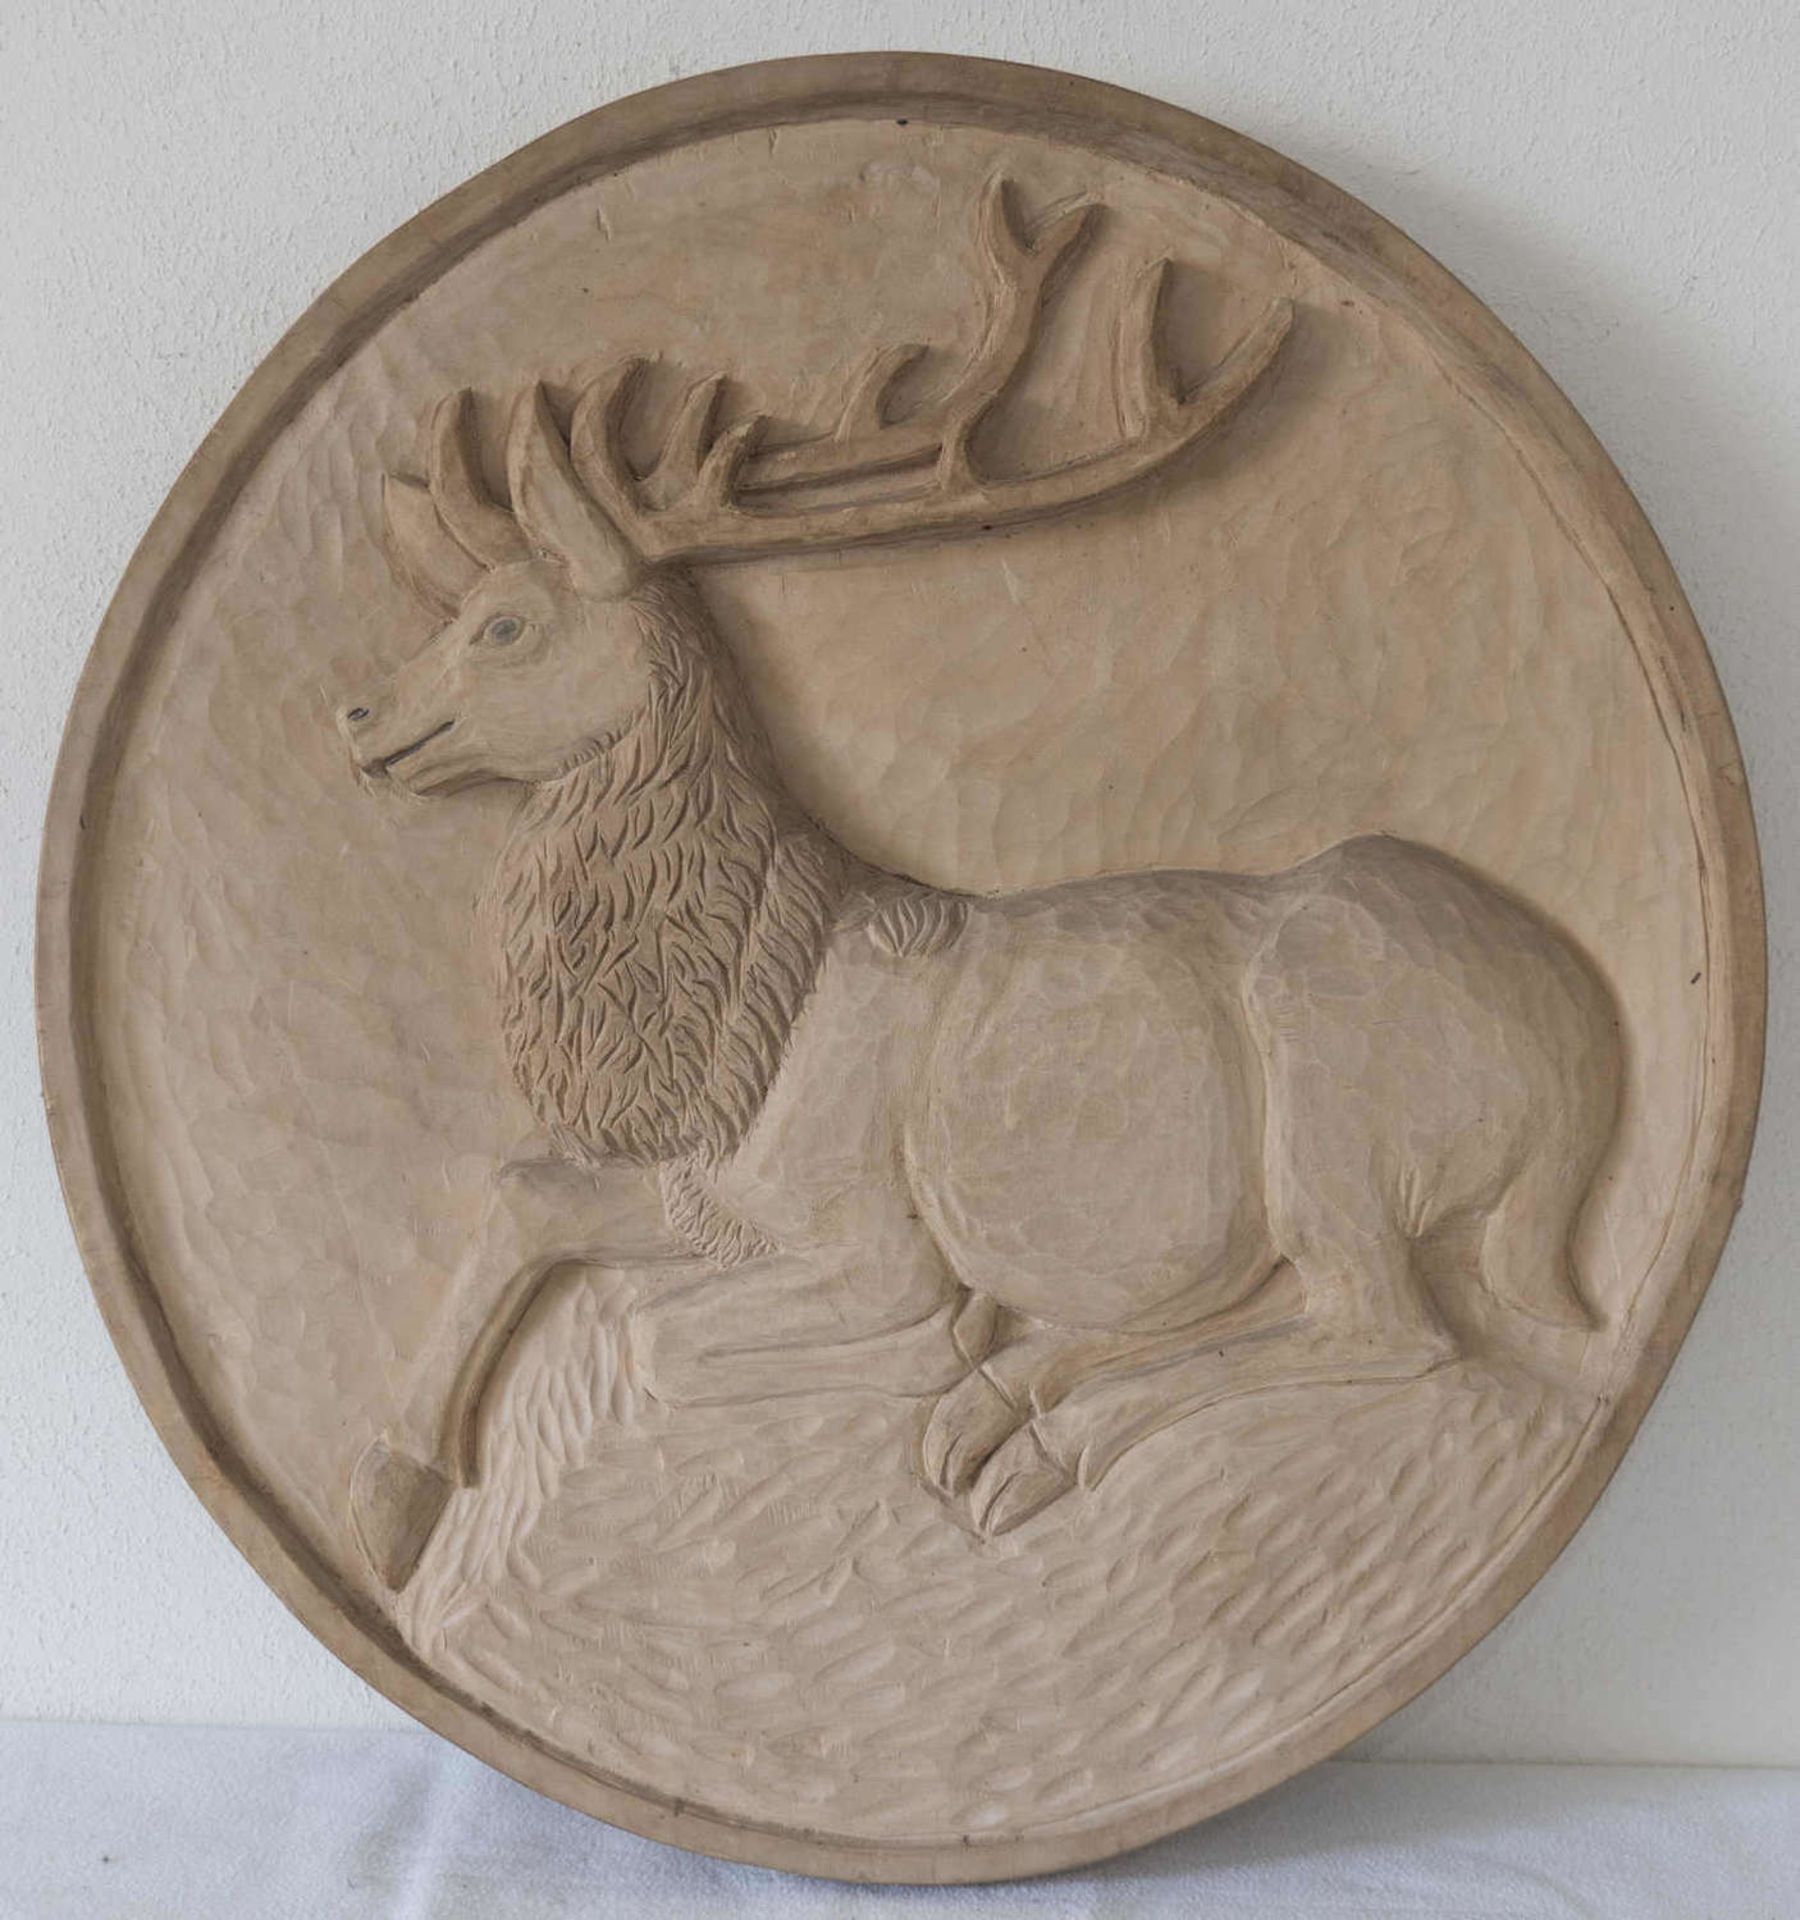 Holzschnitzerei "Hirsch". Aus einer Baumscheibe herausgeschnitzt. Durchmesser: ca. 46 cm.Wood